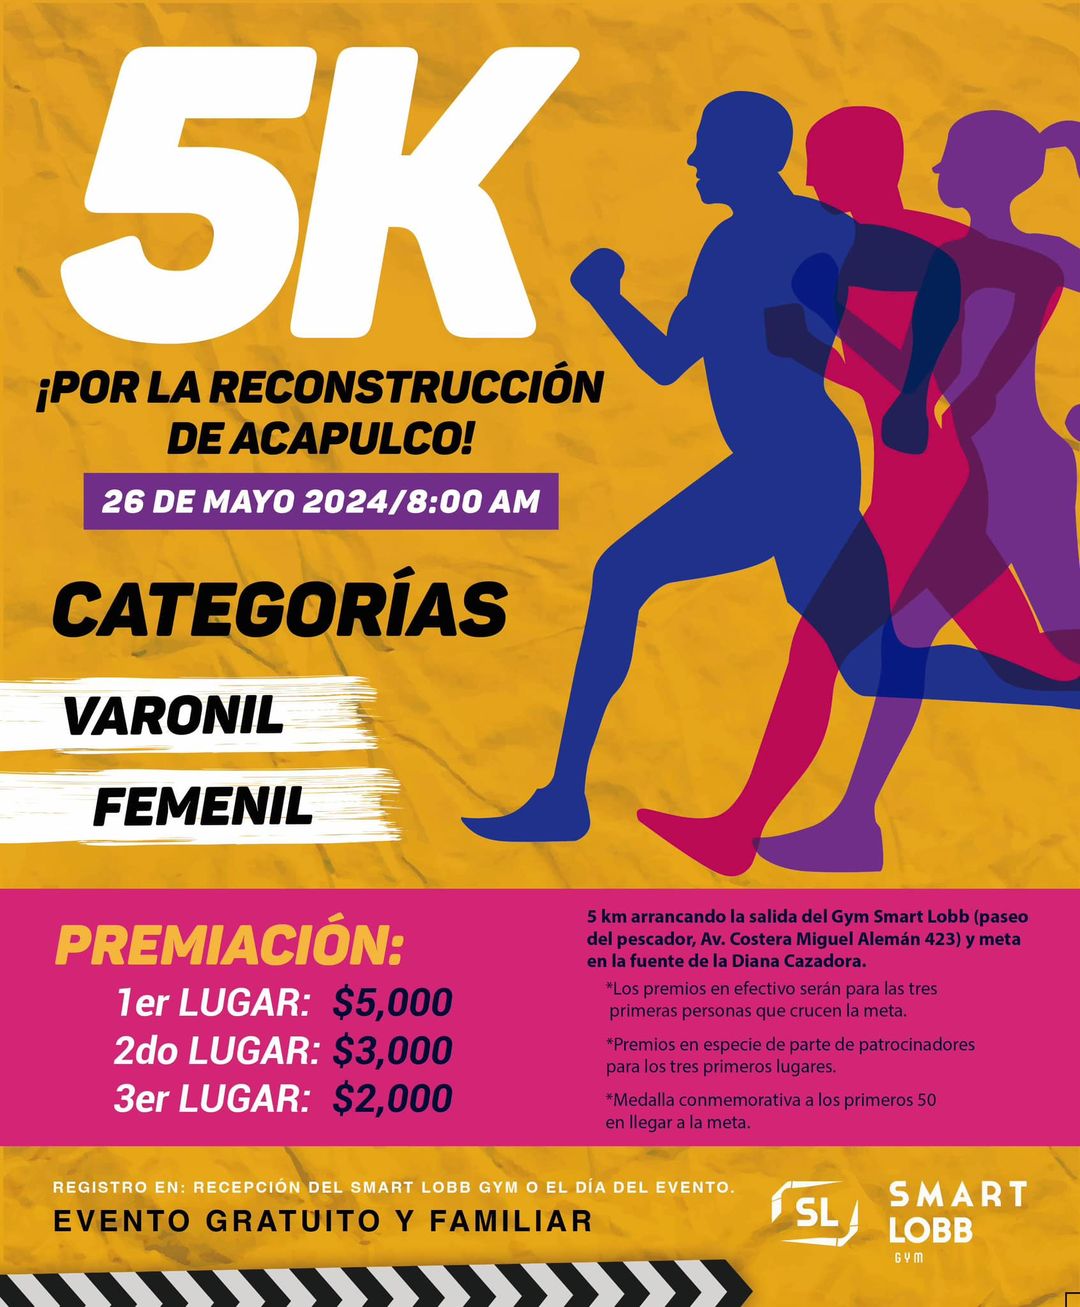 ¡Regresan las actividades deportivas a Acapulco con la “Carrera 5K Por la Reconstrucción” este domingo 26 de mayo!